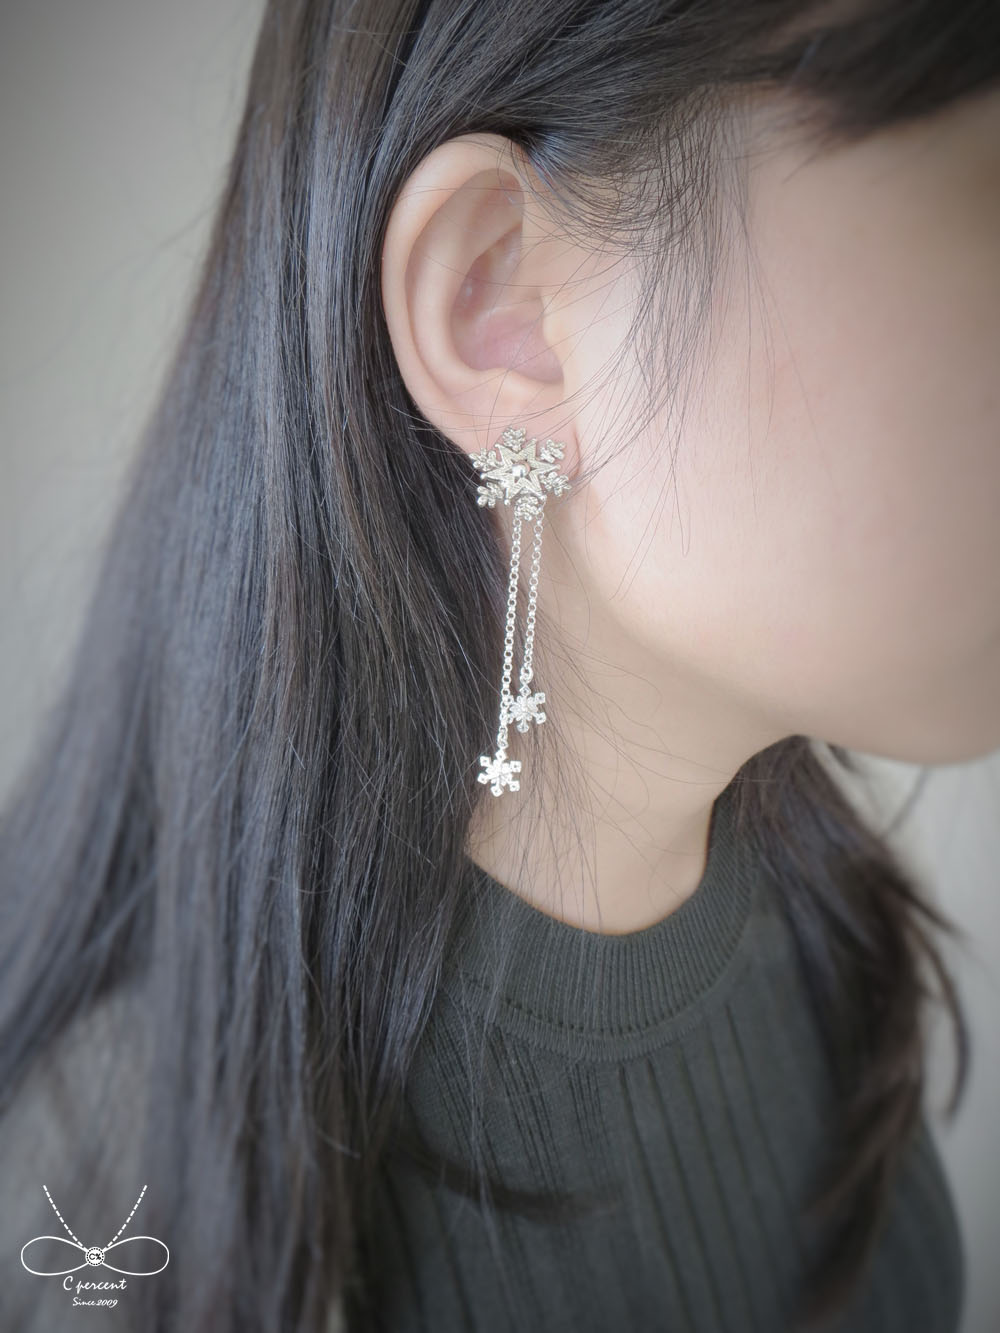 聖誕星星雪花 - 兩件式耳環 (純銀耳環 垂墜銀飾 聖誕節禮物) - 飾品圖片第3張